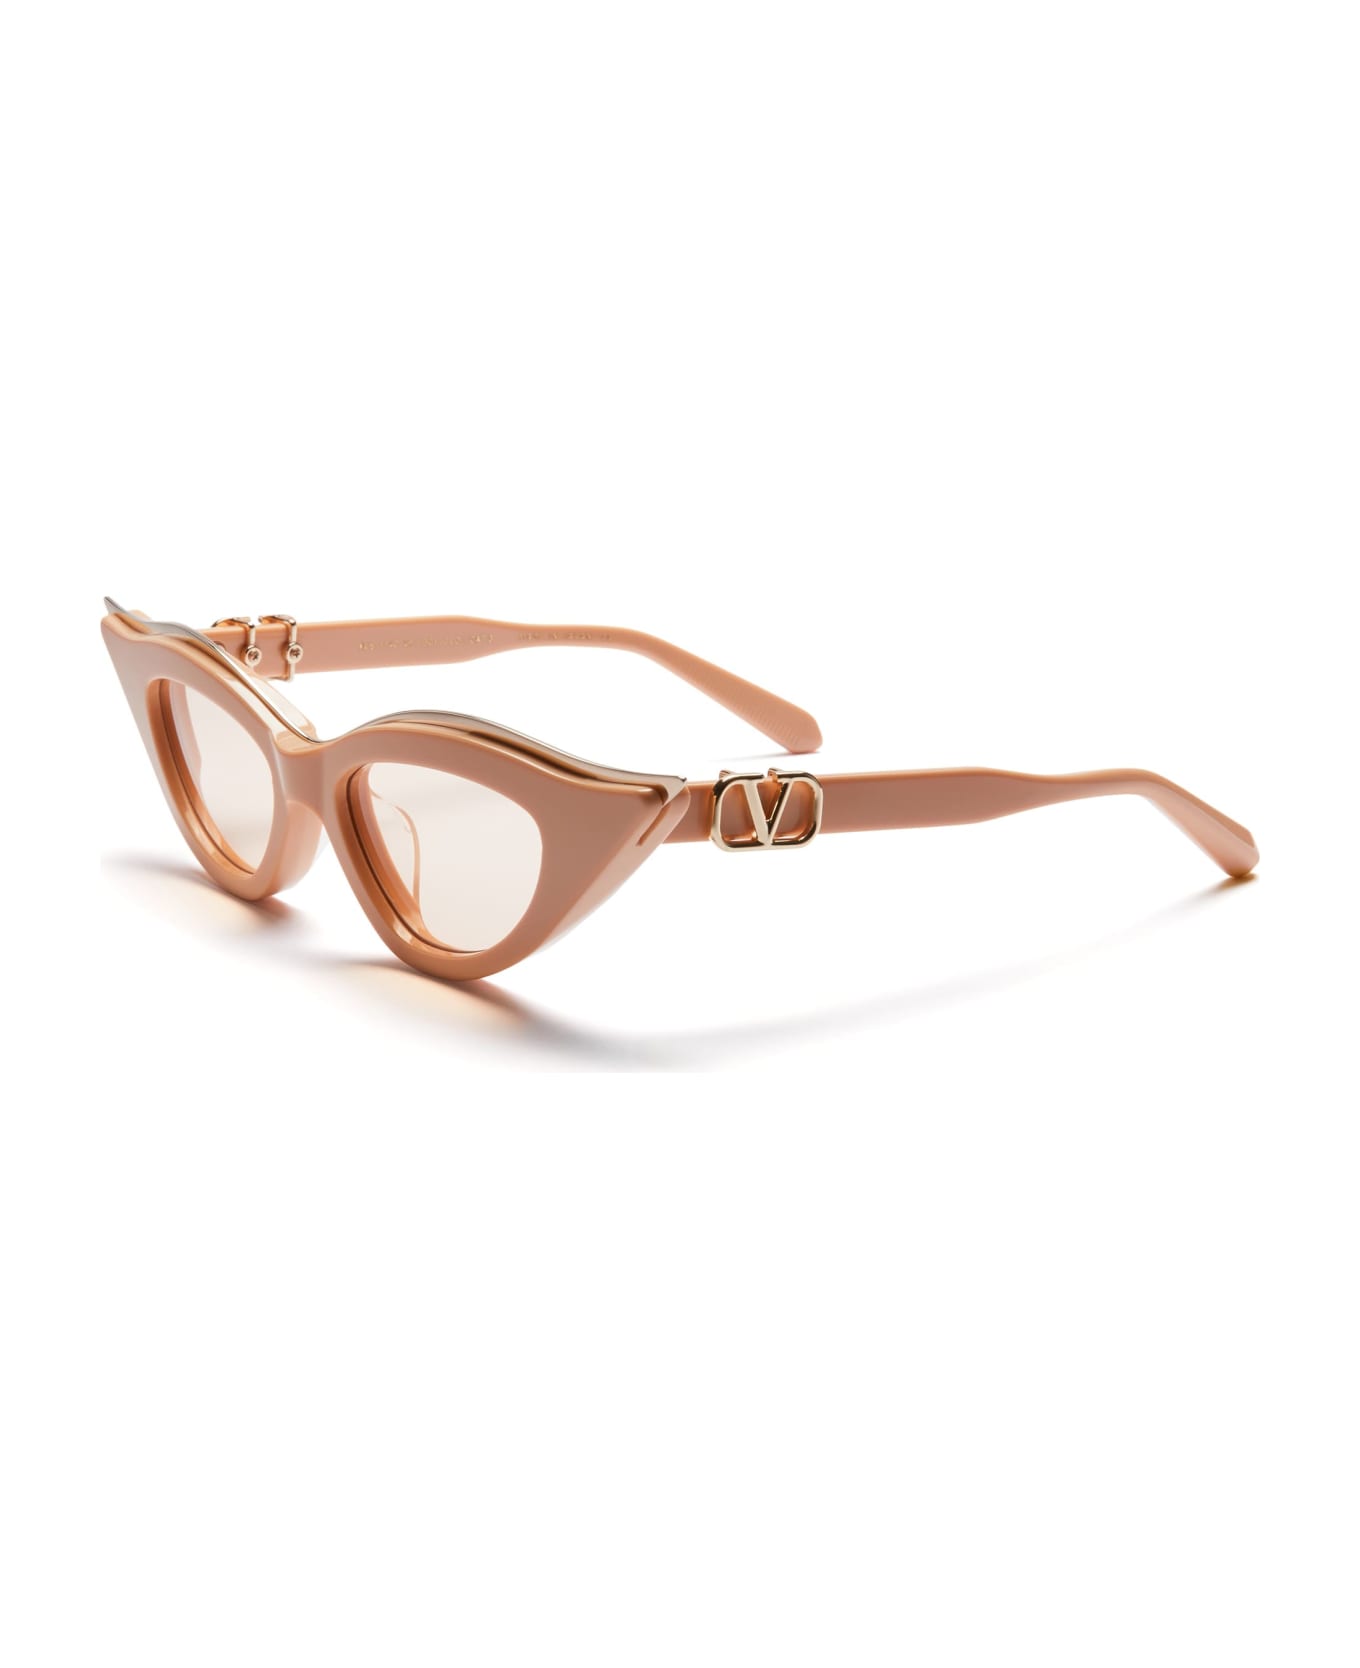 Valentino Eyewear V-goldcut Ii - Beige / White Gold Sunglasses - beige